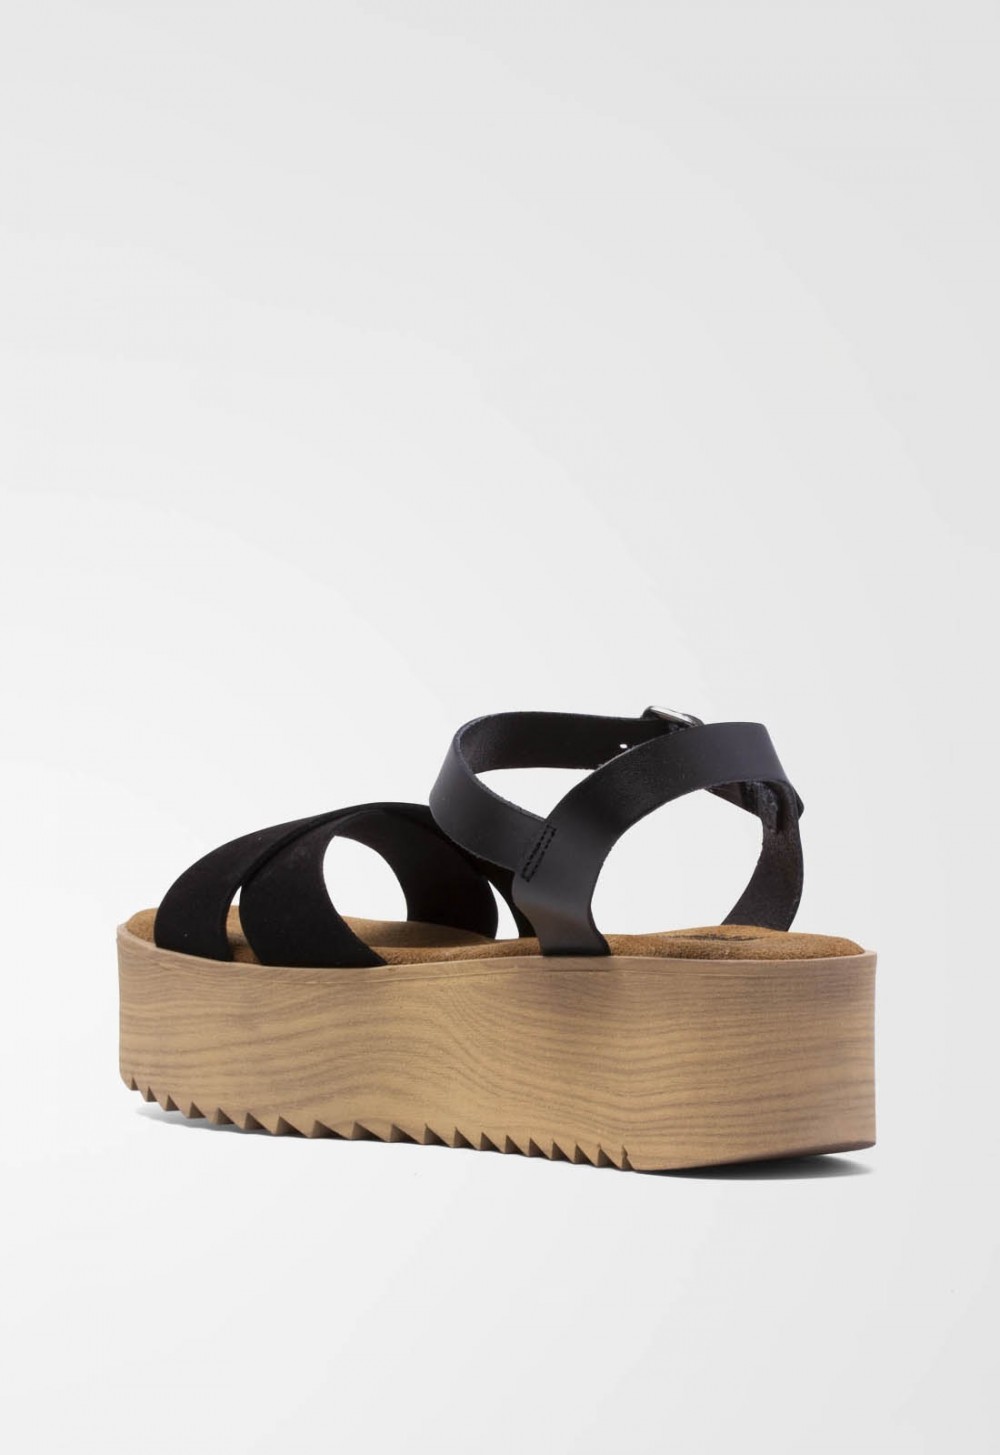 Sandalia plataforma madera de Mujer Negro en zapatos...